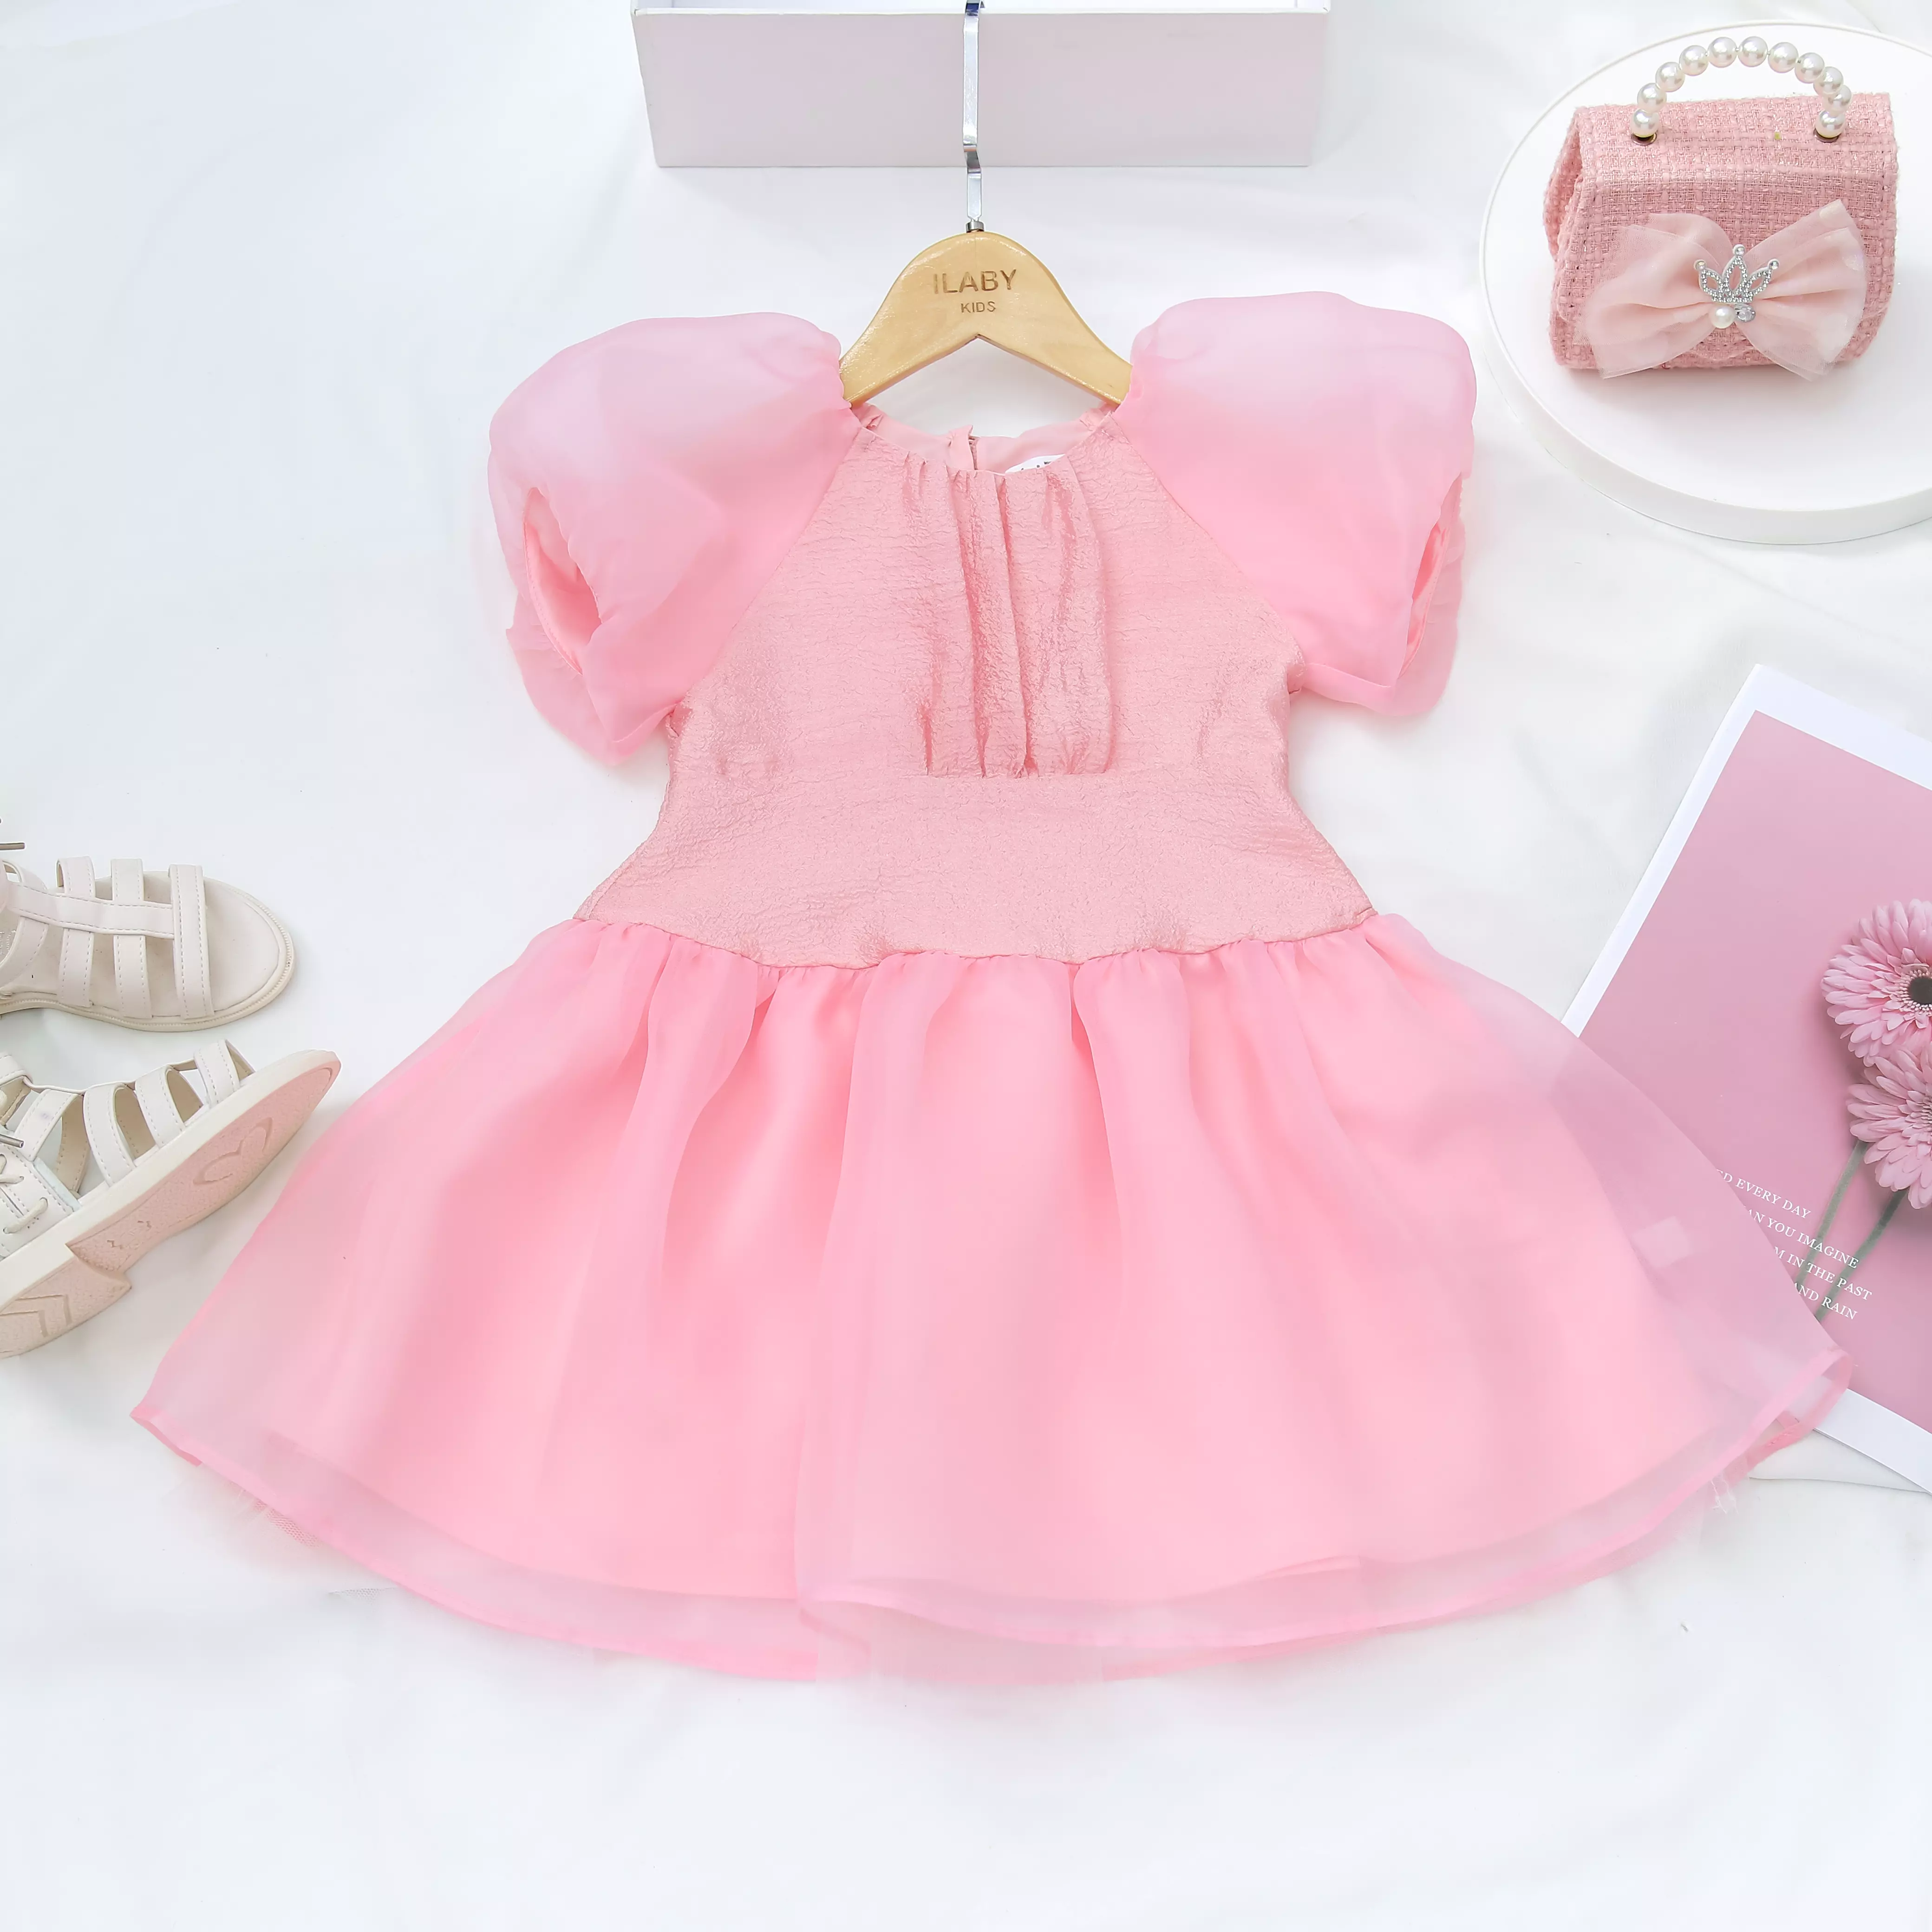 Váy lolita cho bé gái sơ sinh, 0,1,2,3,4,5,6,7,8 tuổi Babystore88, Đầm công  chúa bé gái hàng thiết kế V11 | Lazada.vn